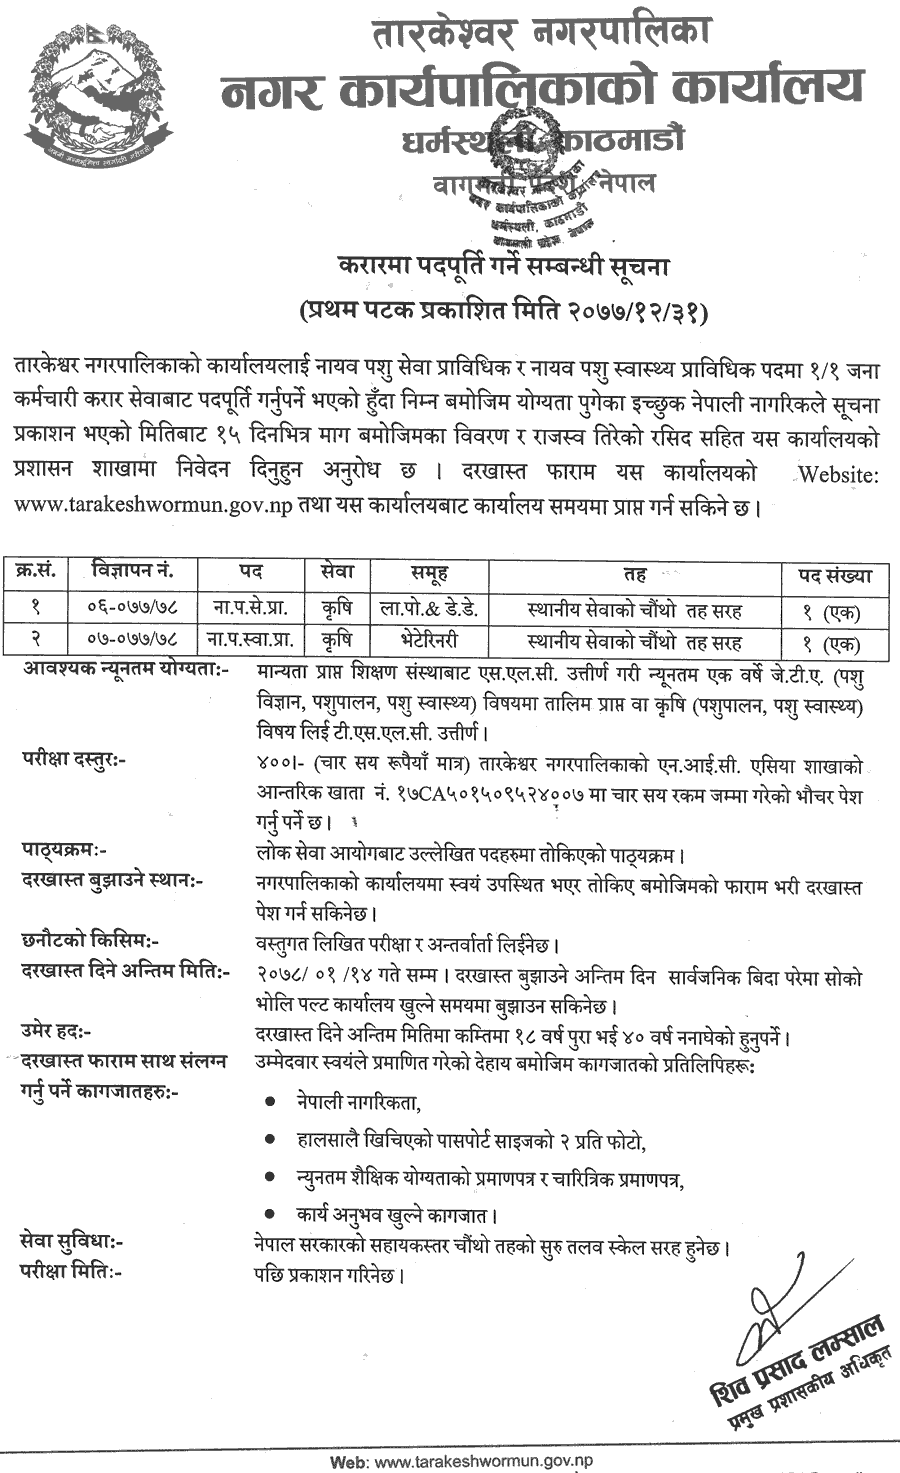 Tarakeshwor Municipality Vacancy for VJTA